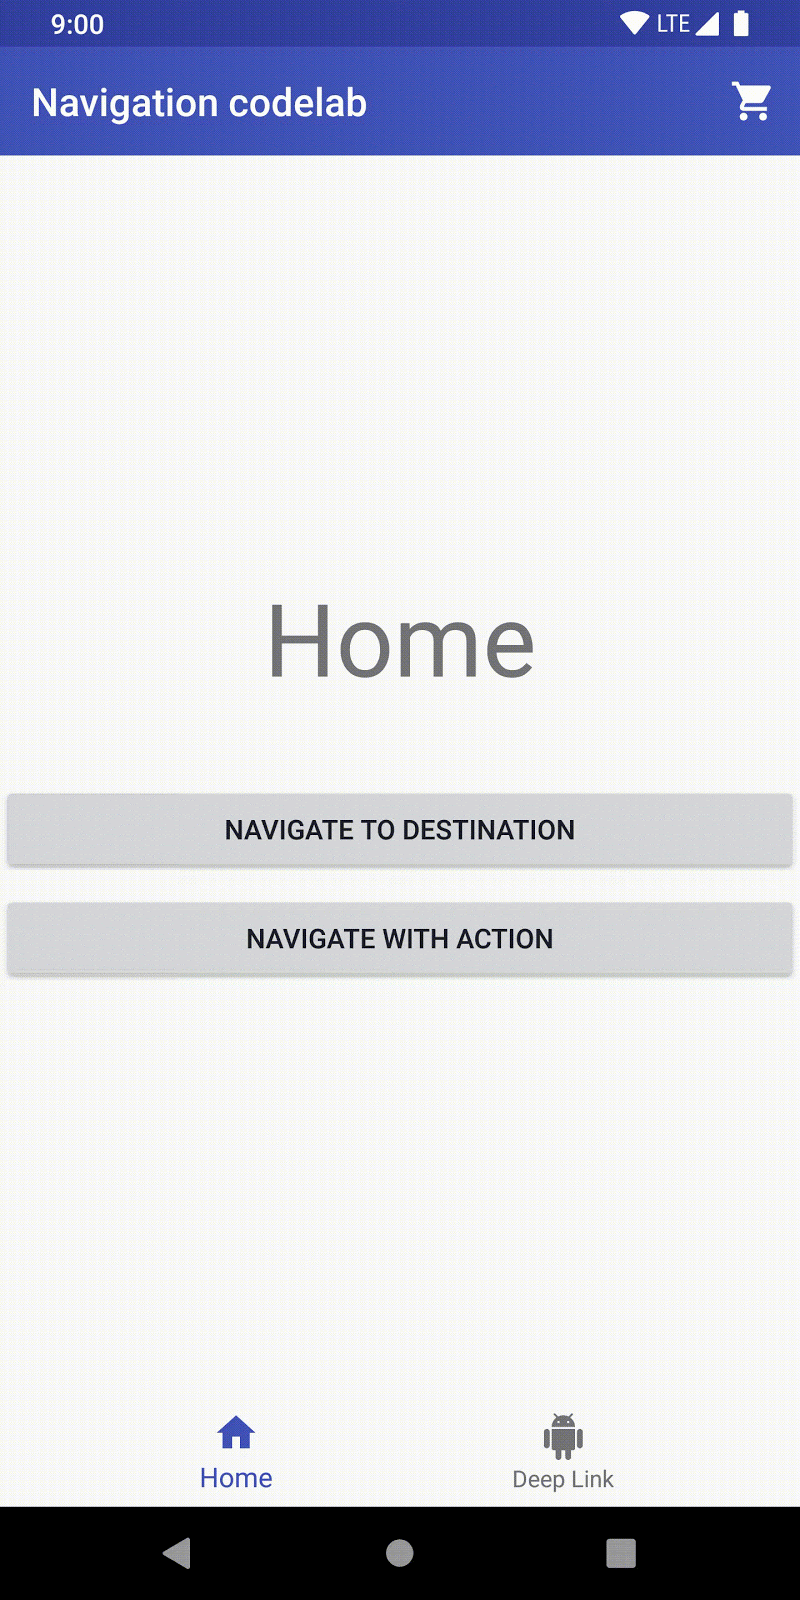 Dans l'écran d'accueil, l'utilisateur clique sur "Navigate to Destination" et accède à la première étape.